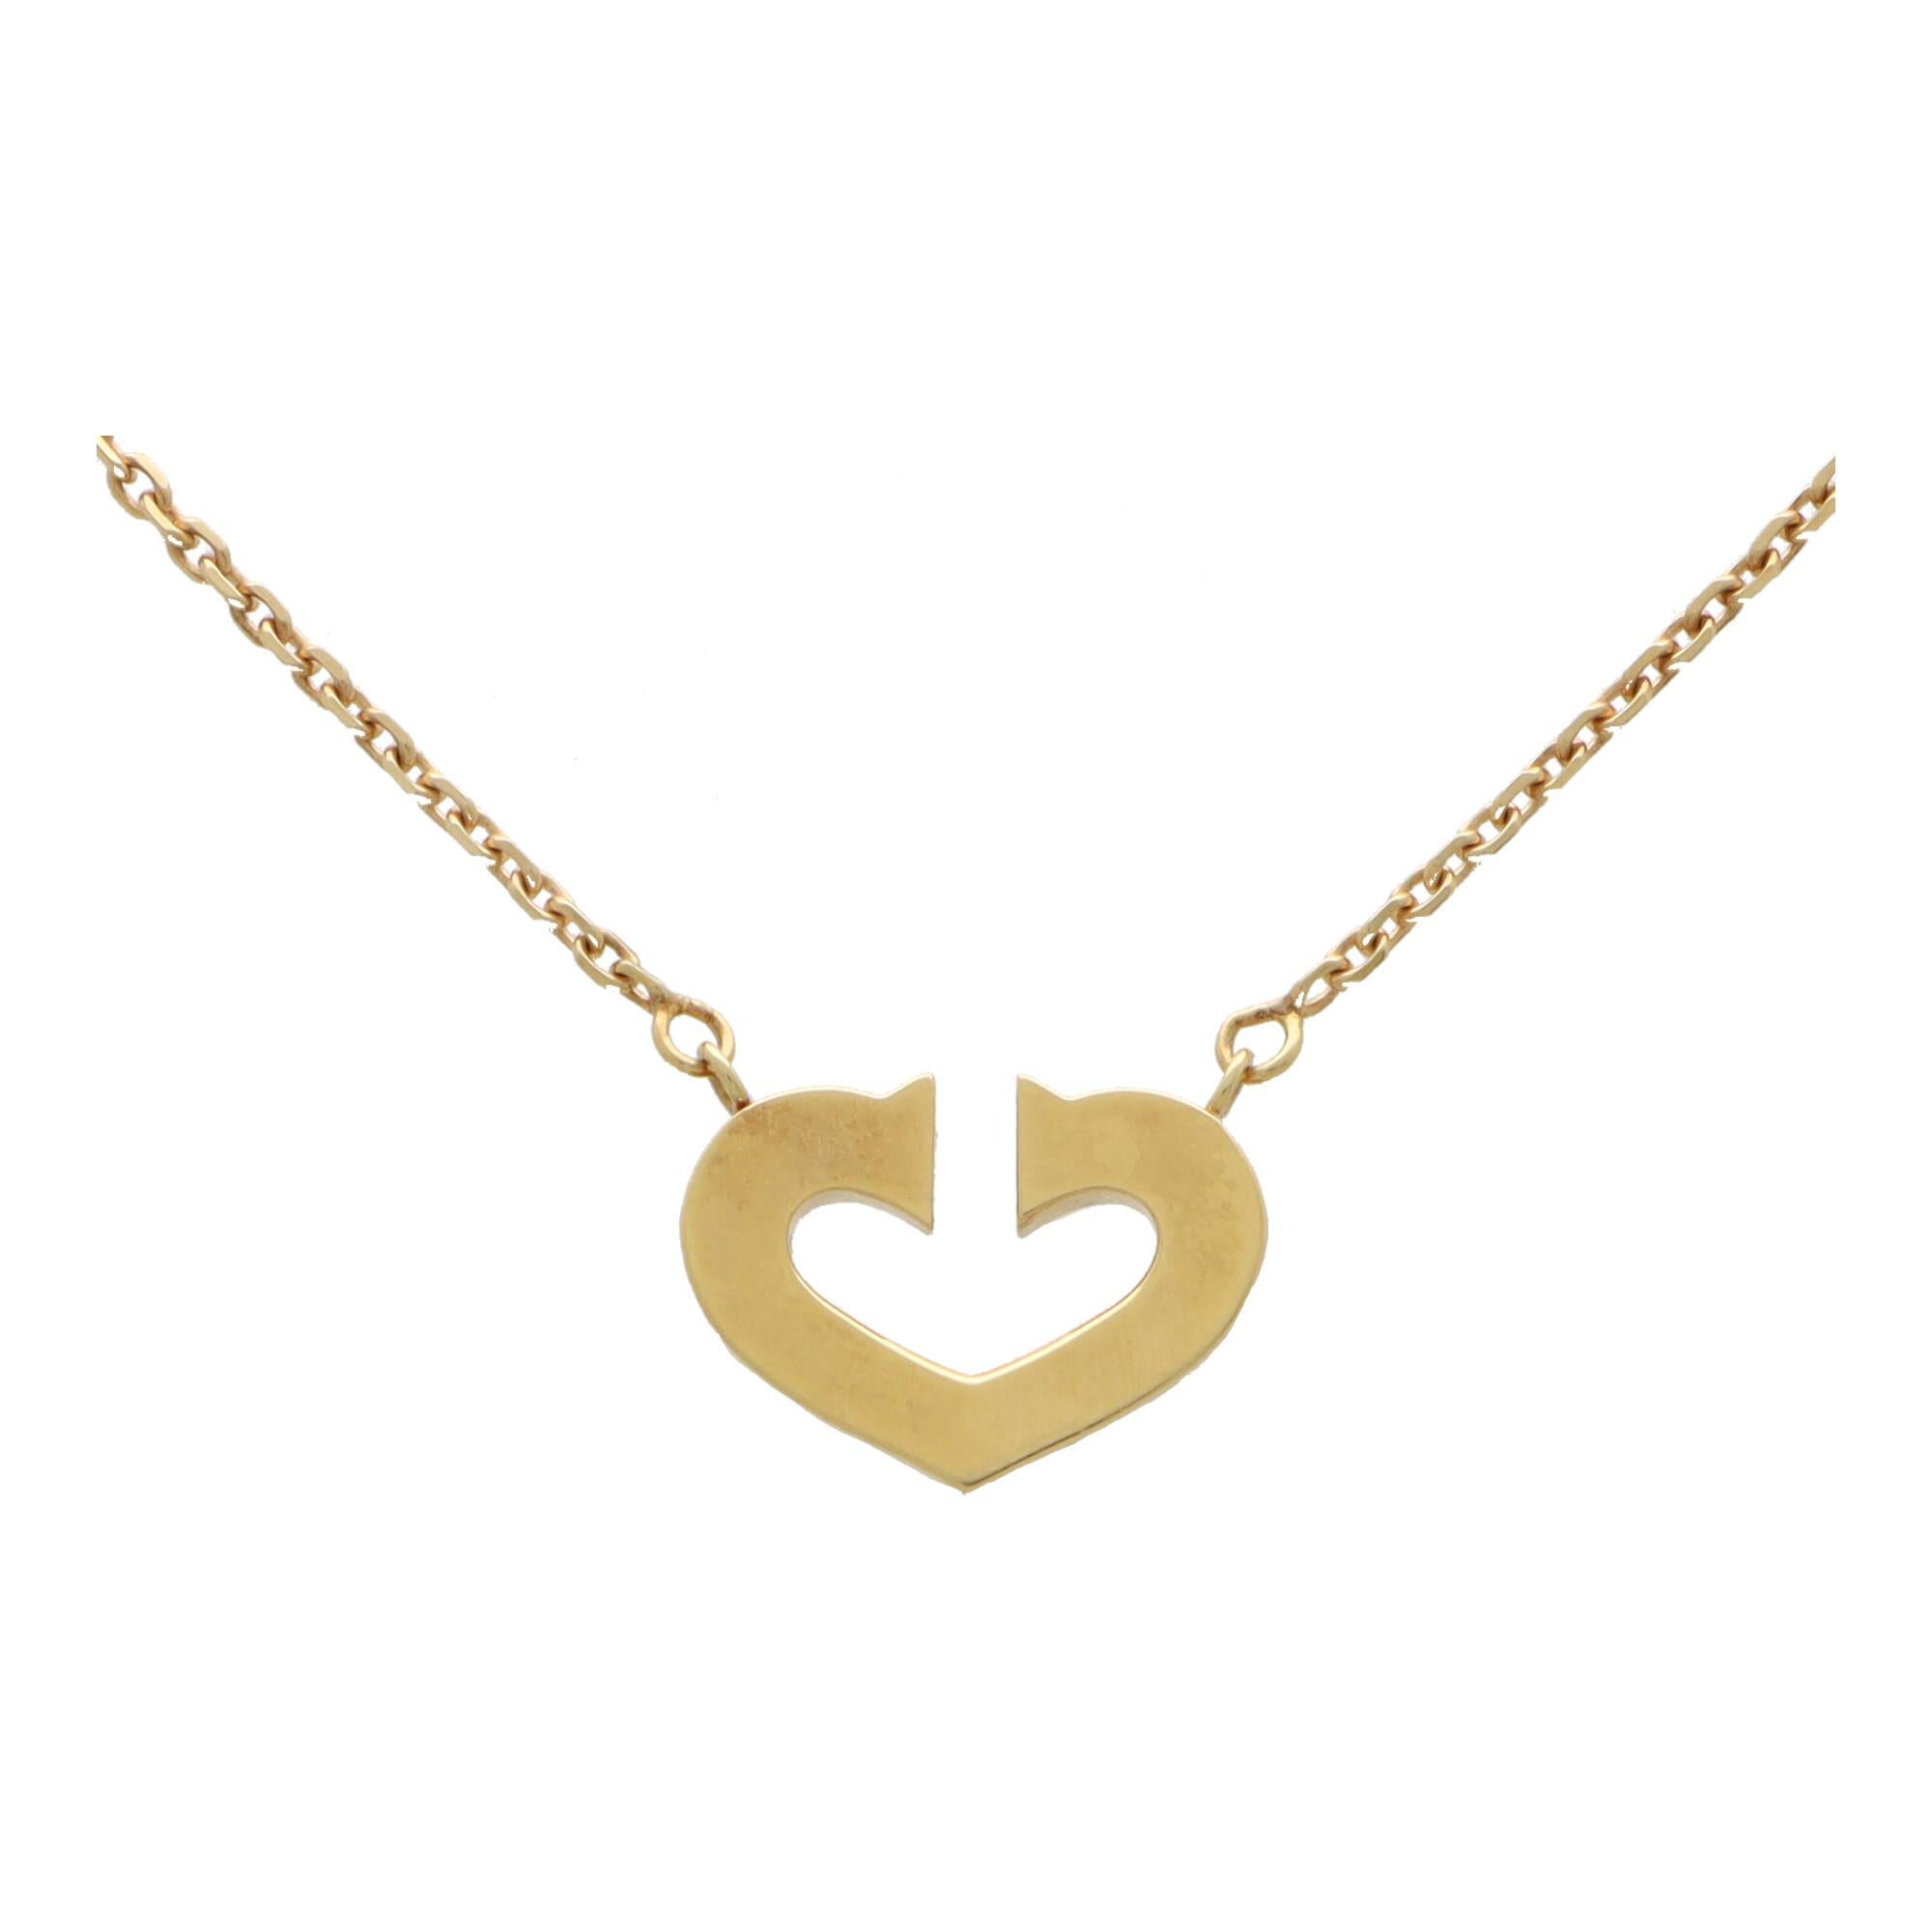 Magnifique pendentif en forme de cœur ouvert en double C de Cartier en or jaune 18 carats.

Le collier présente uniquement le motif emblématique du cœur en double C et est suspendu à une chaîne en or jaune fin. Le collier est solidement attaché à